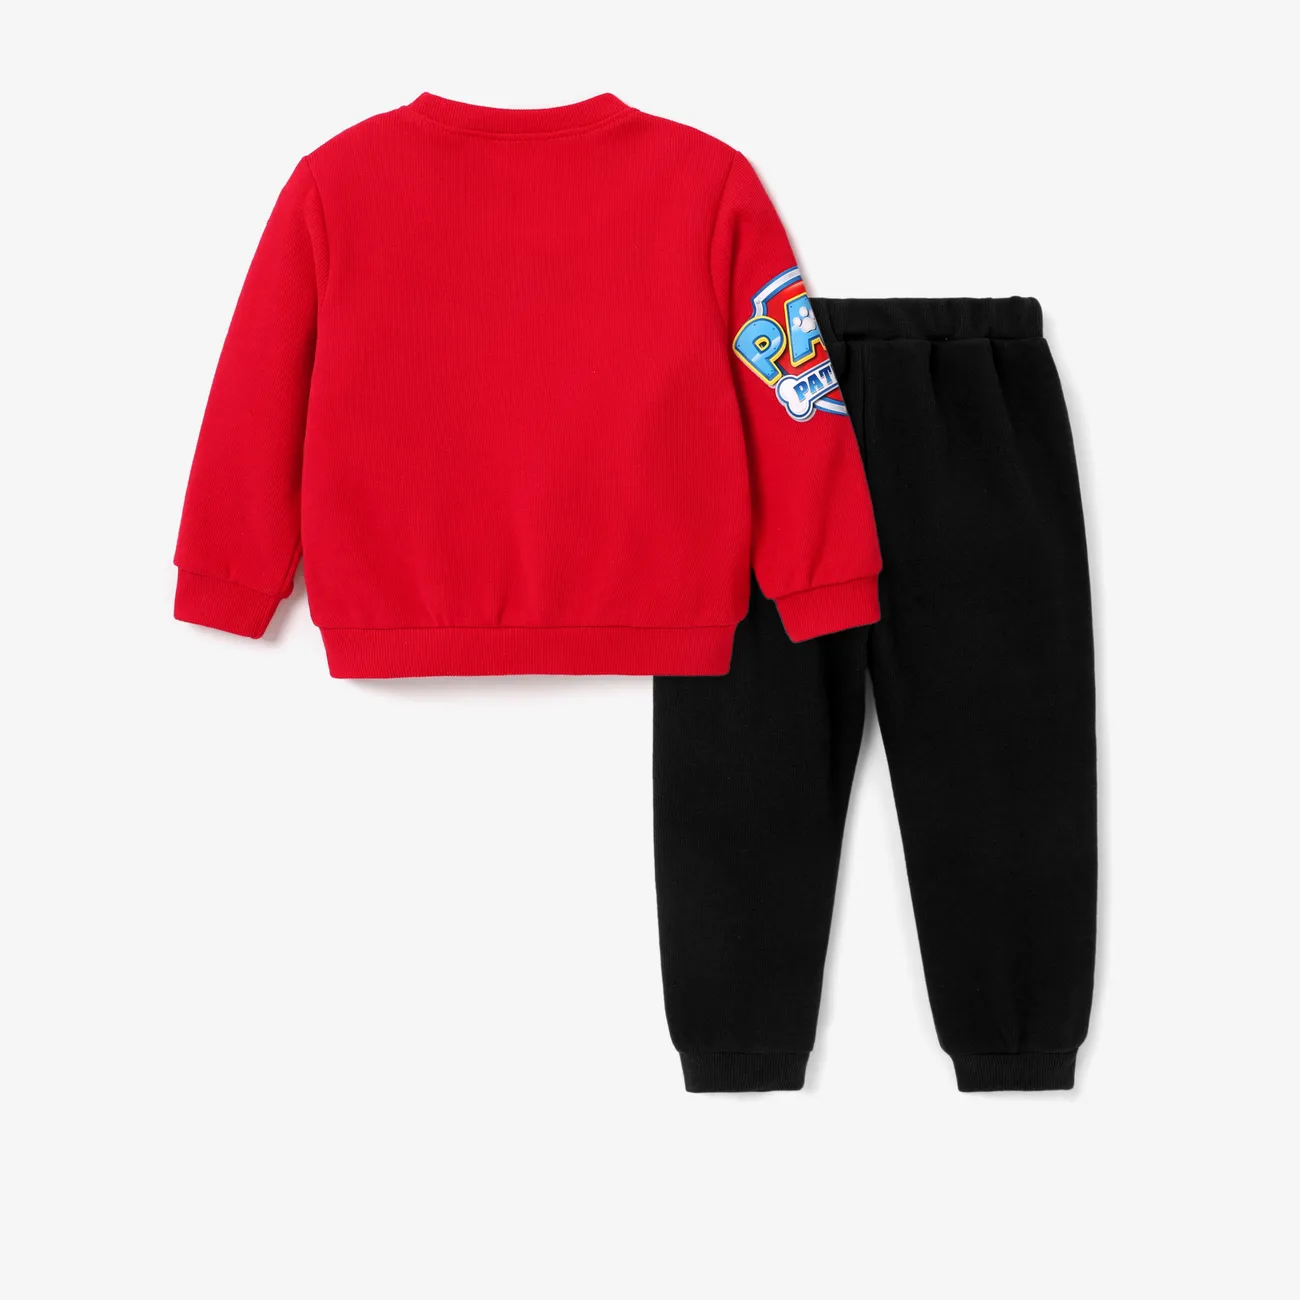 Helfer auf vier Pfoten Kleinkinder Jungen Kindlich Sweatshirt-Sets rot big image 1